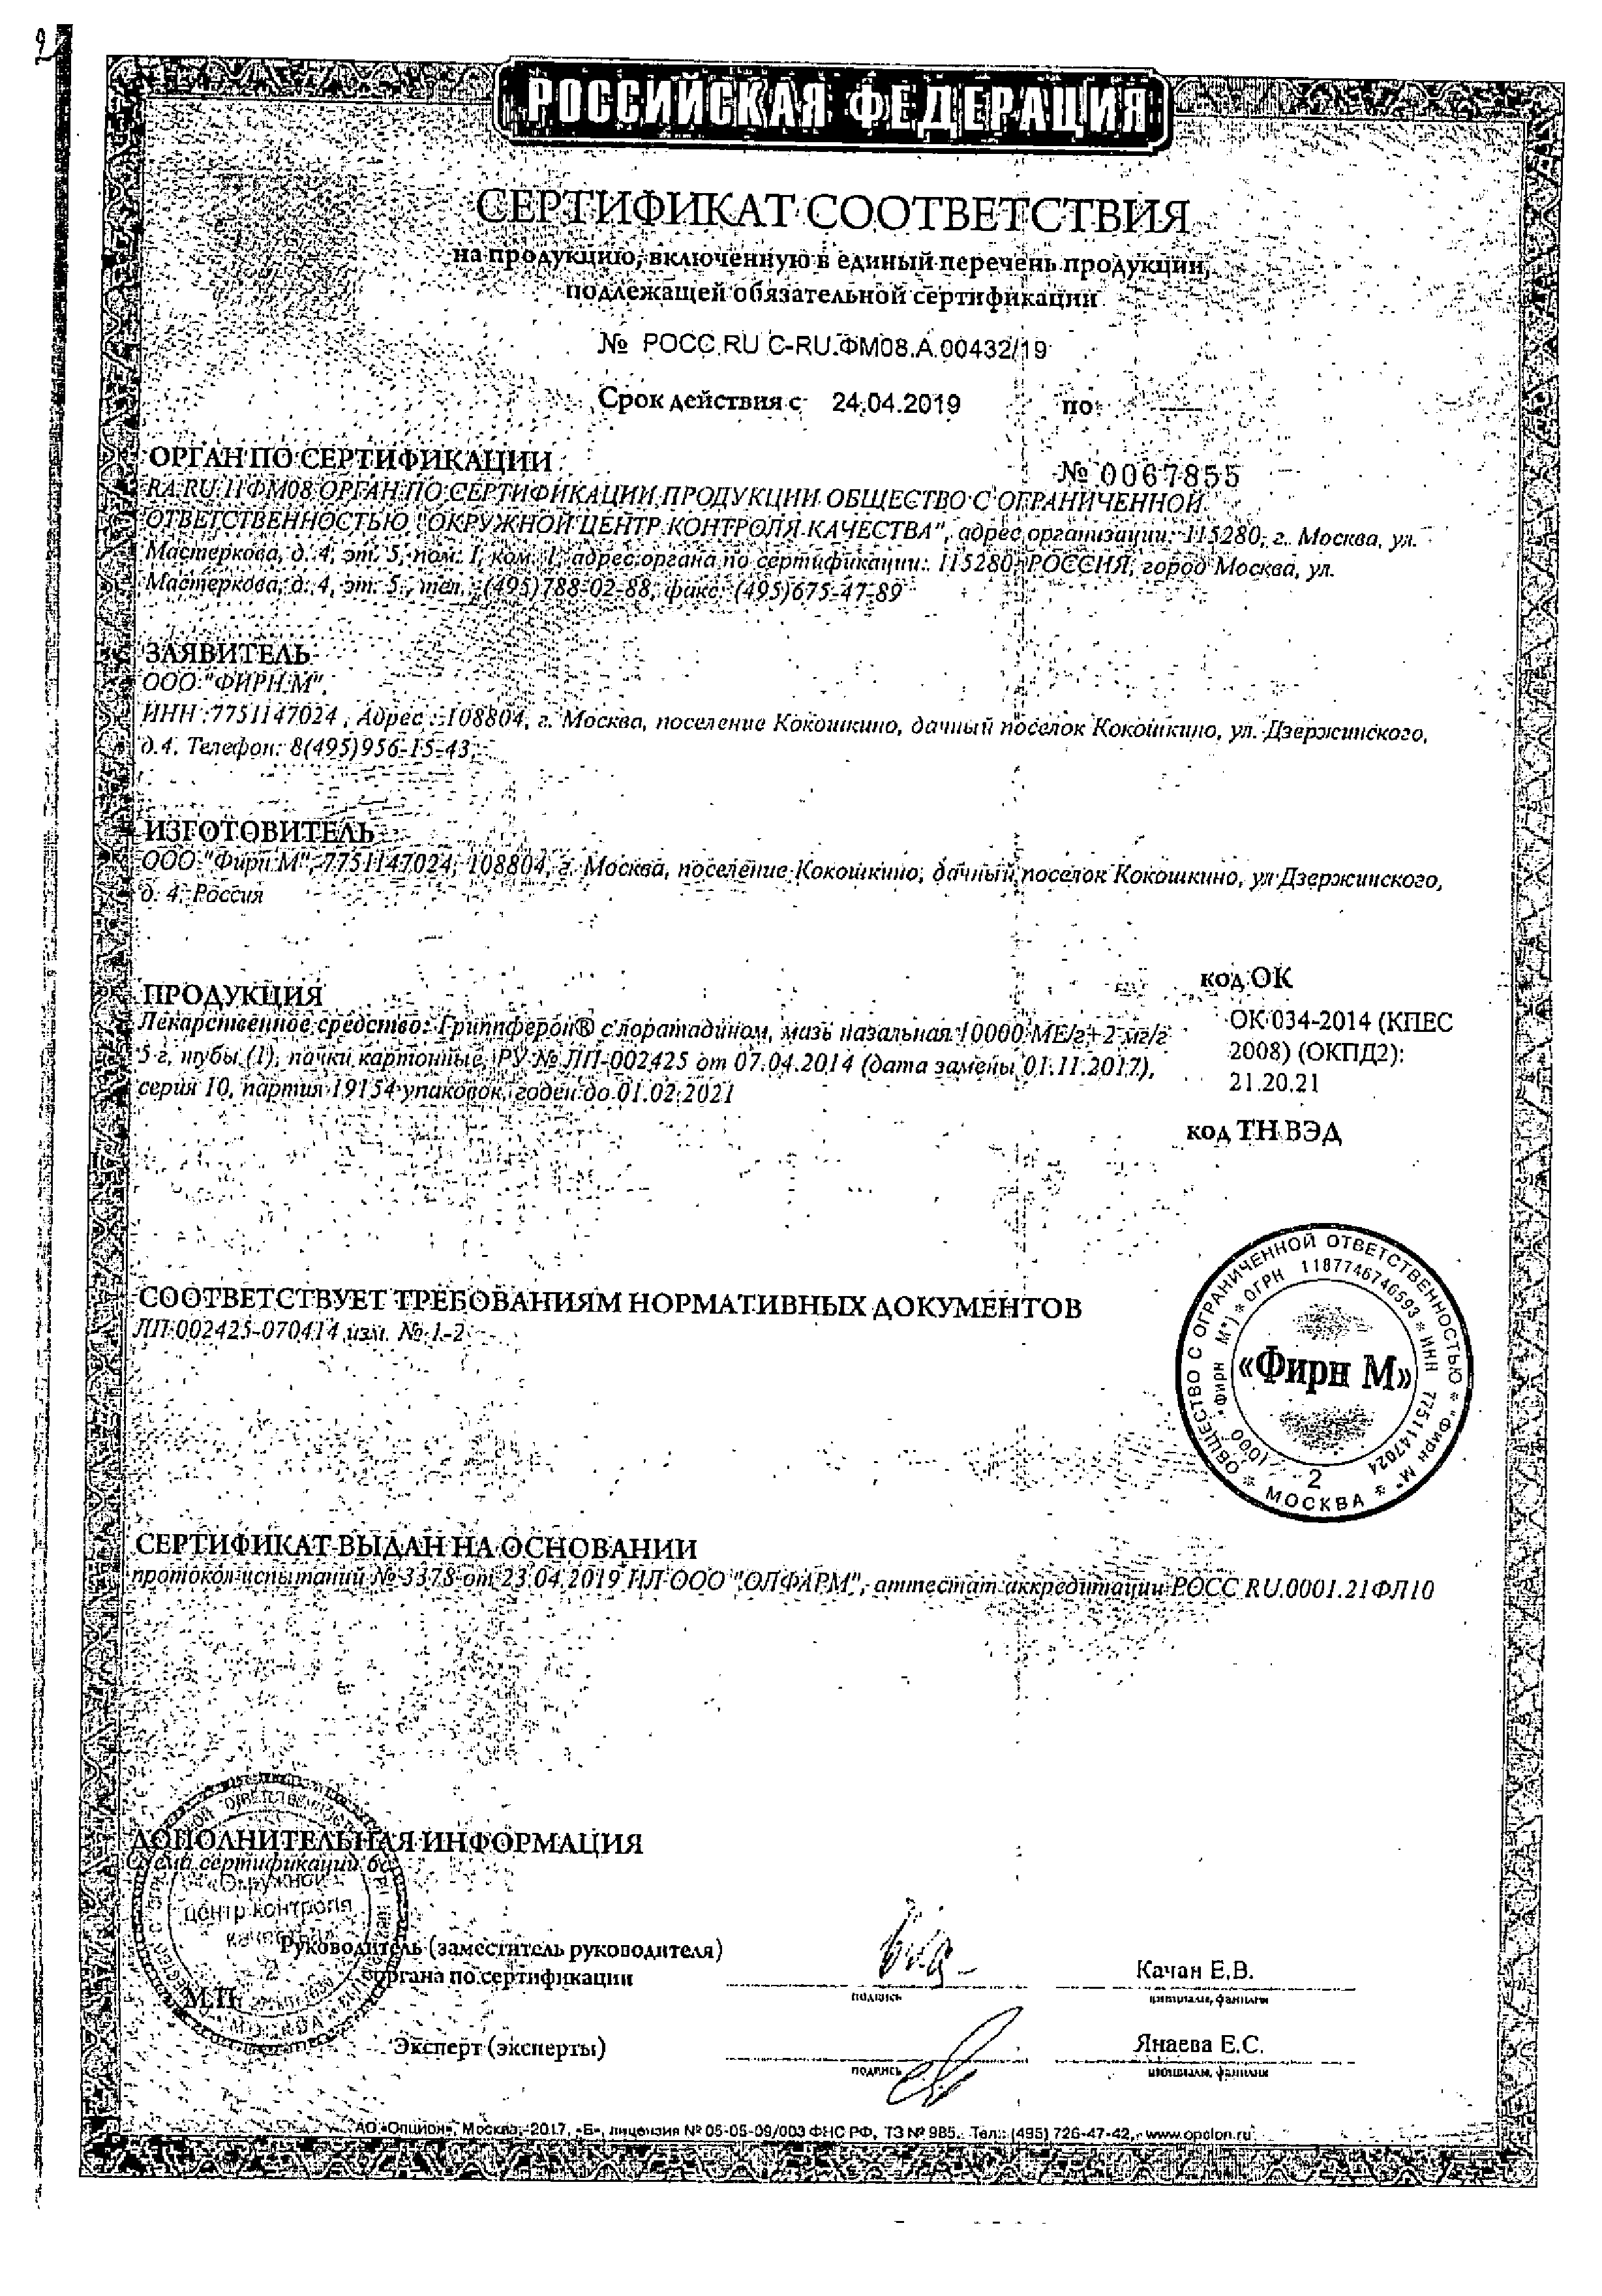 Гриппферон с лоратадином сертификат